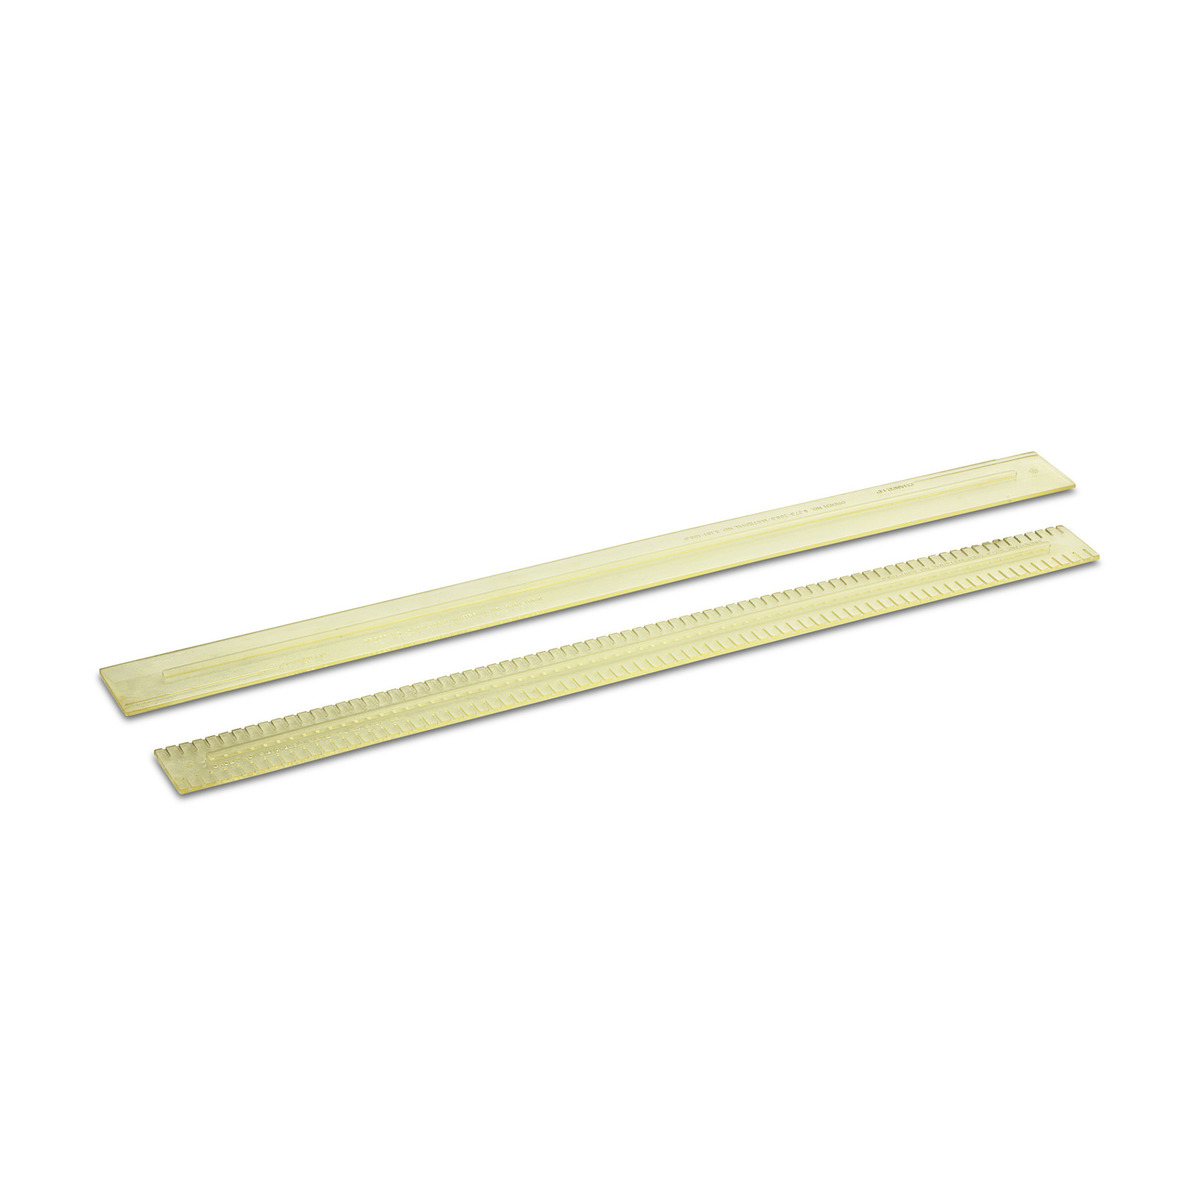 Squeegee blades for V-squeegee, oil-resistant, grooved, 1010 mm – Хусуурын резинэн ир